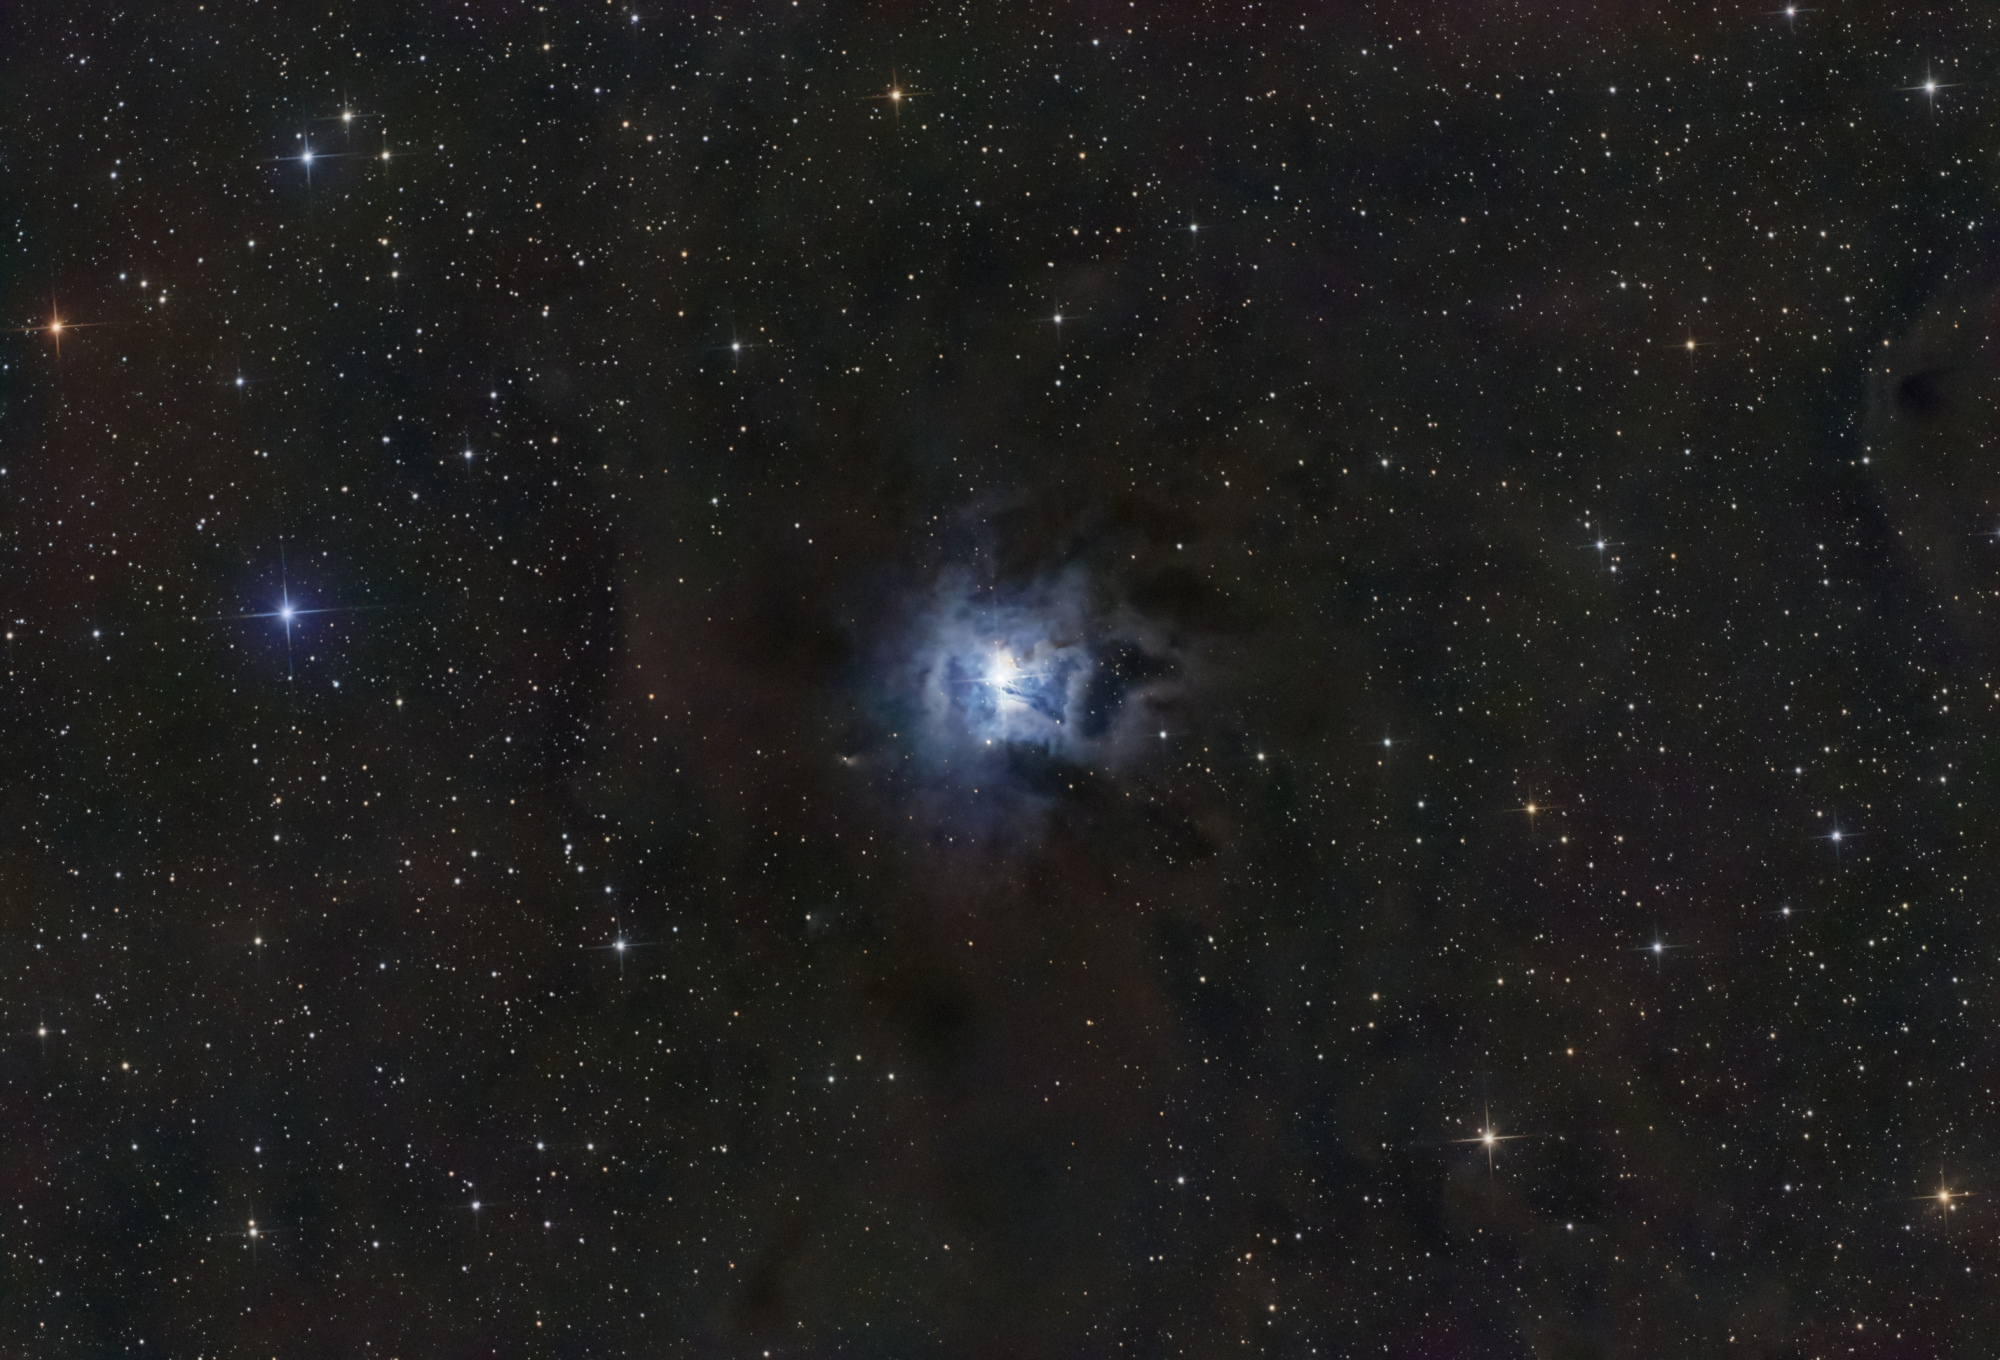 656193b371a55_NGC7023Iris-N150-artemis_294c_RGB-Siril-PIx-PS-finale-V2.thumb.jpg.16d001dd34694d7af01bbb15d725a591.jpg